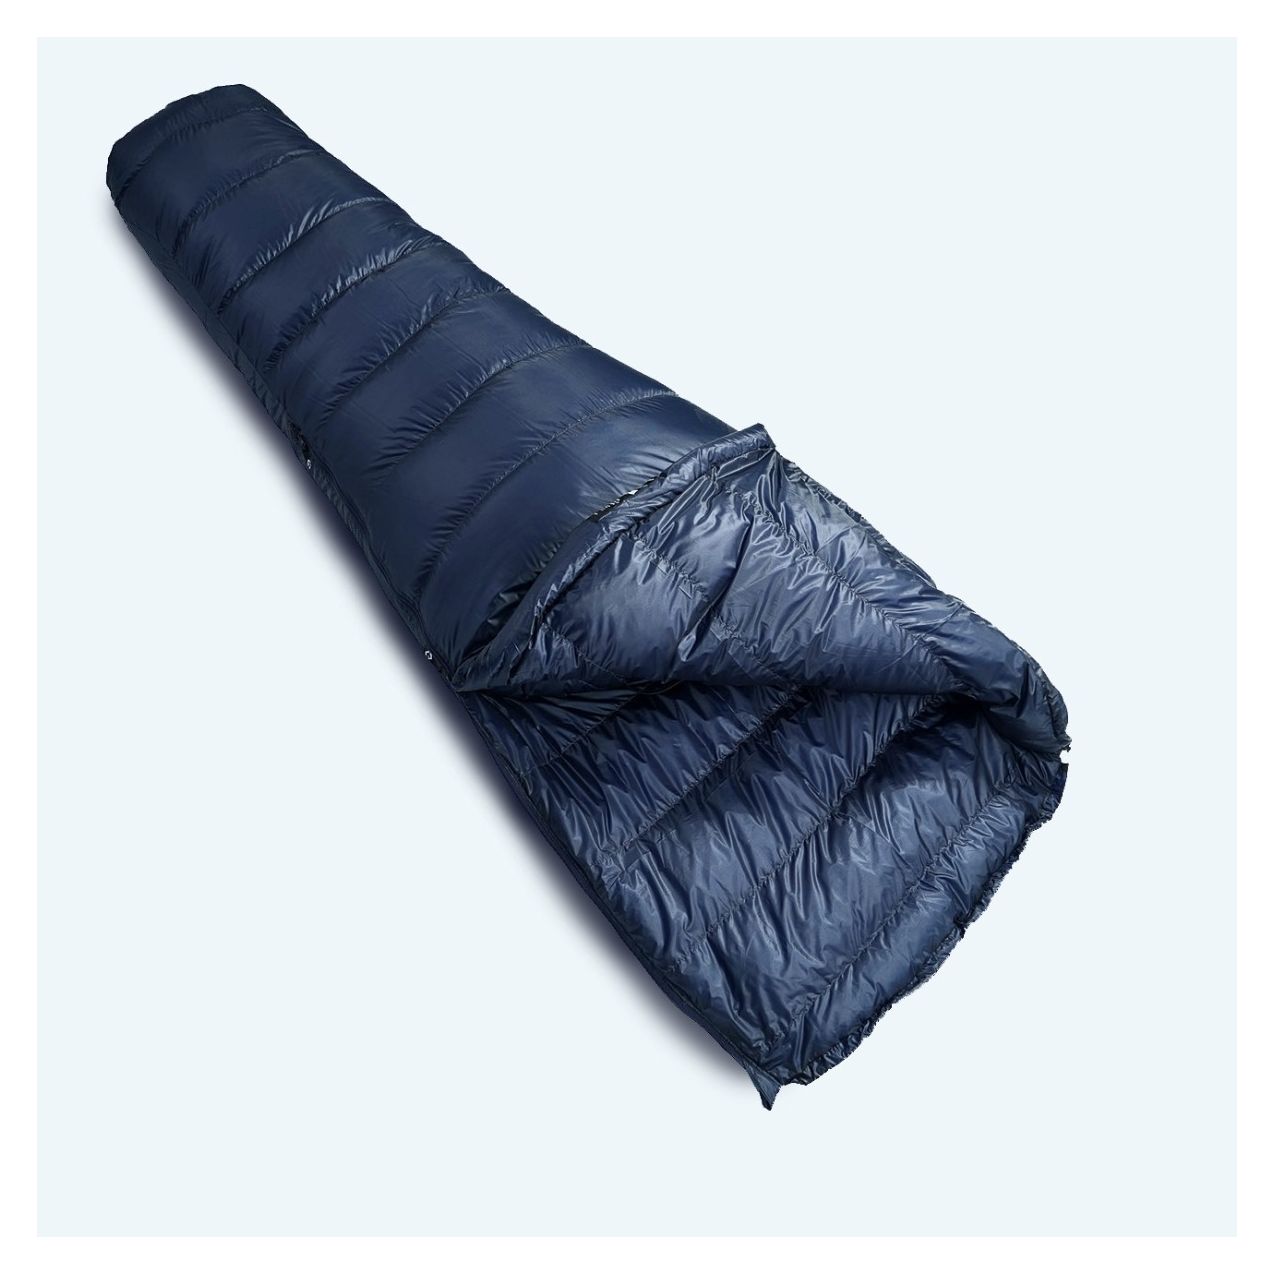 X-Lite 200 down sleeping bag Cumulus® outdoor